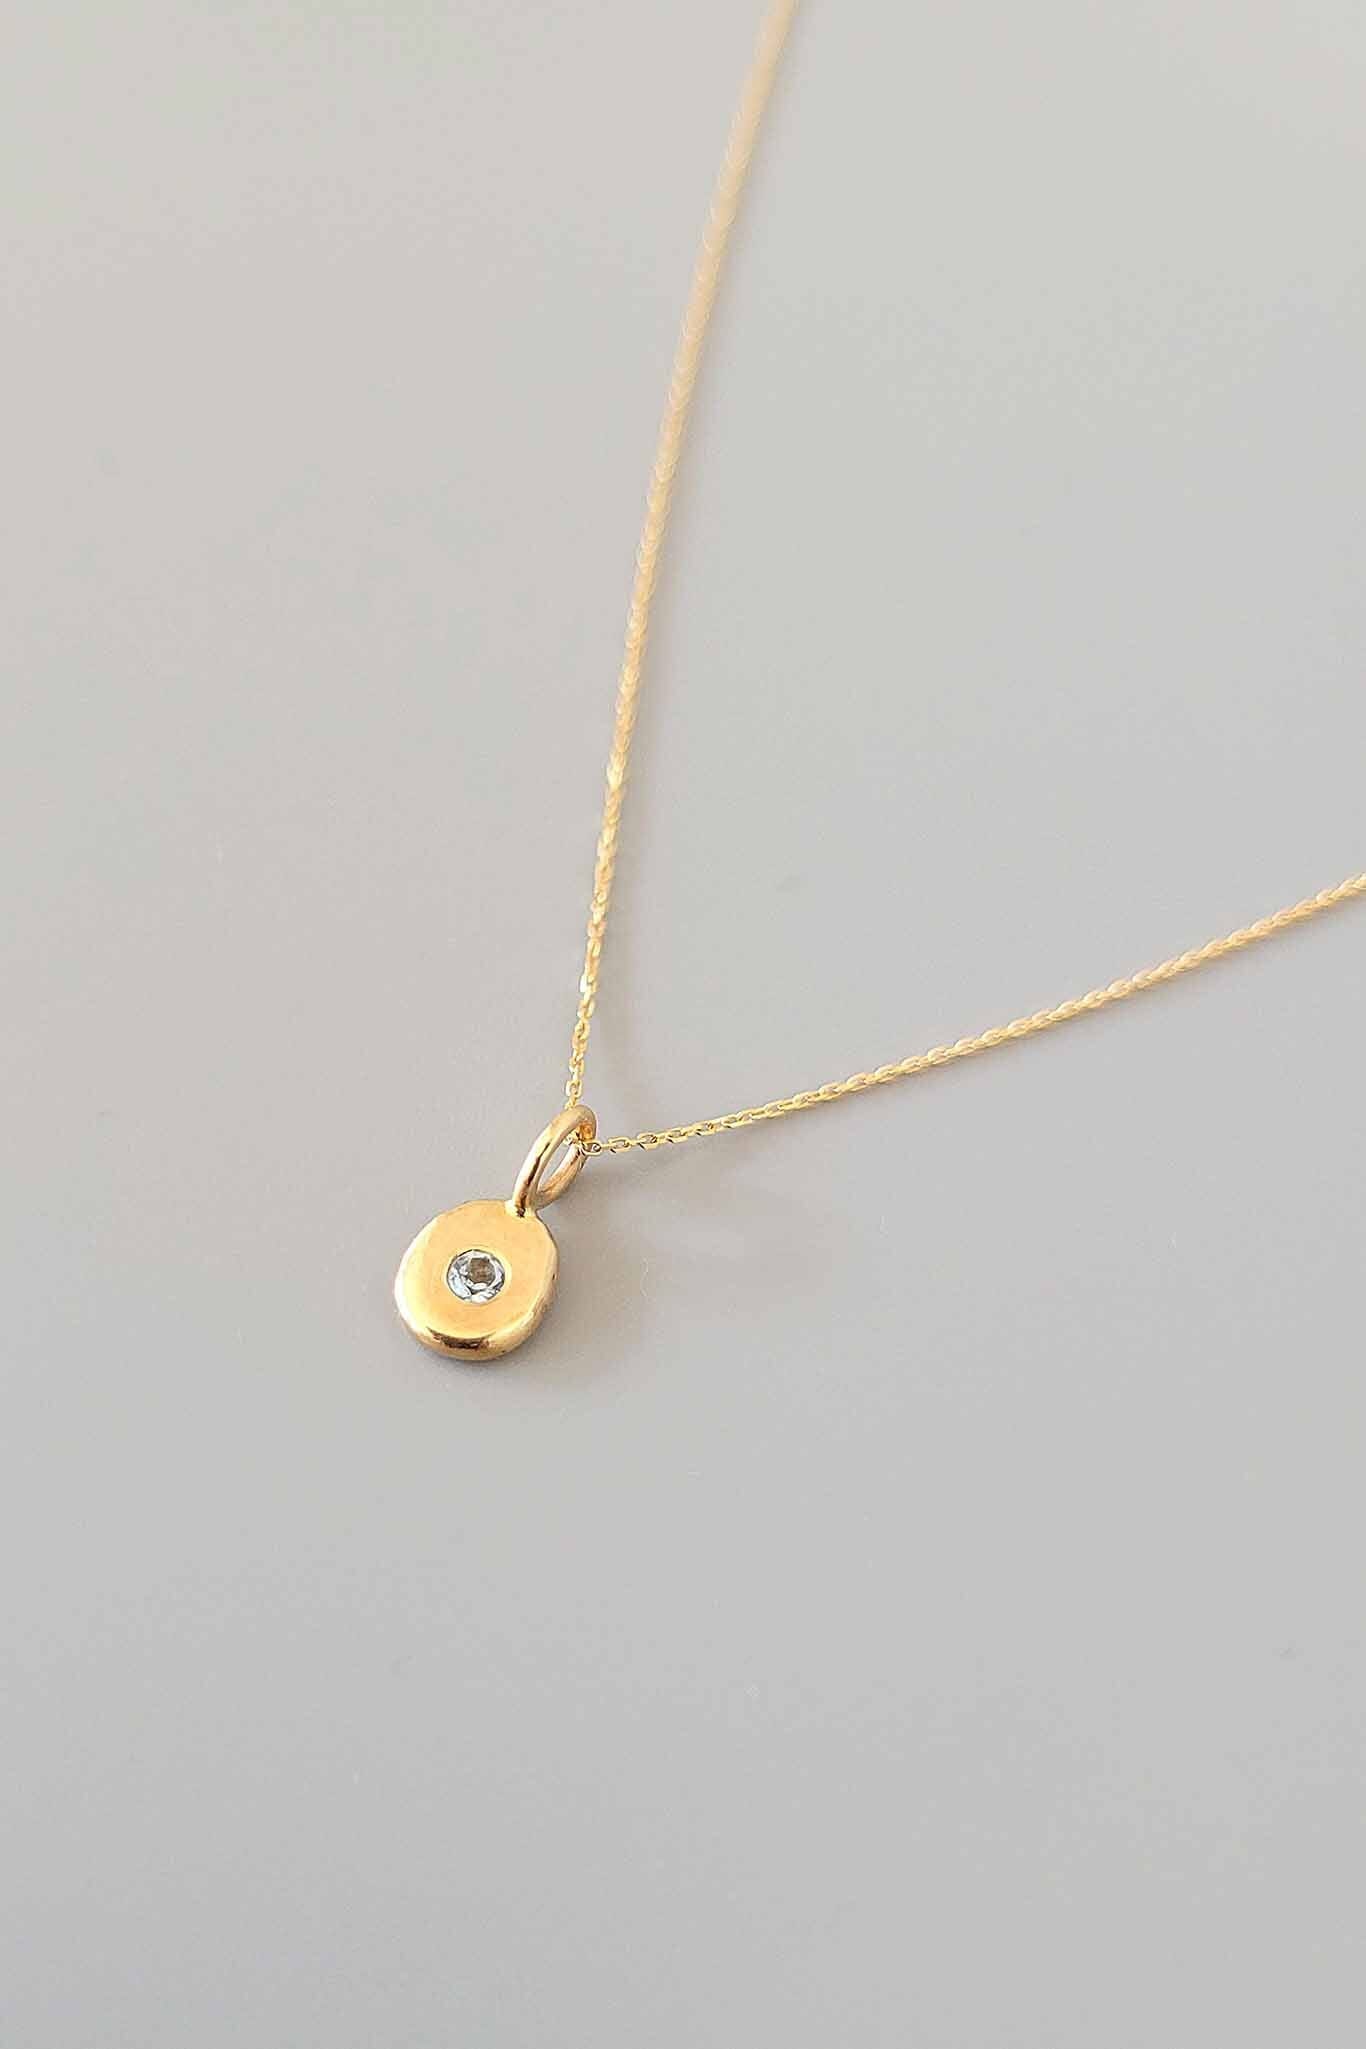 Cobamae Gold Charm Necklace - Aquamarine